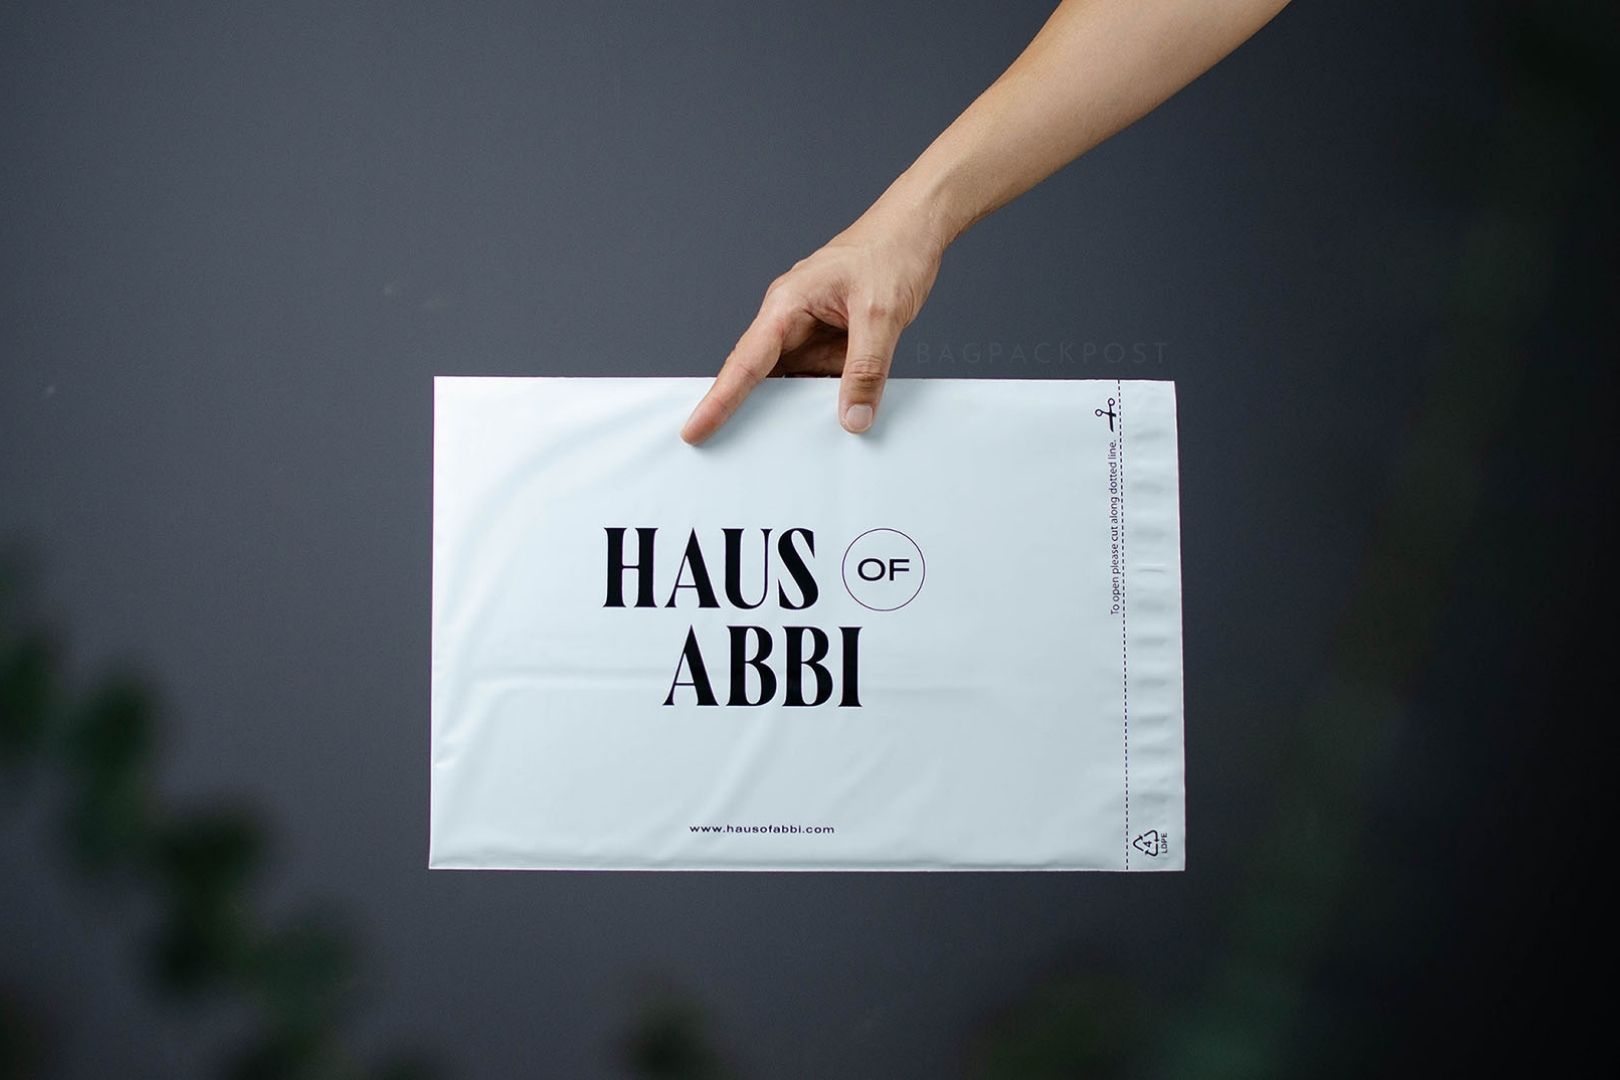 ผลิตถุงไปรษณีย์ ซองไปรษณีย์พิมพ์ลาย ถุงไปรษณีย์พิมพ์ลาย  ซองพิมพ์ลาย Haus of Abbi ส่งด่วน งานคุณภาพ | BagPackPost